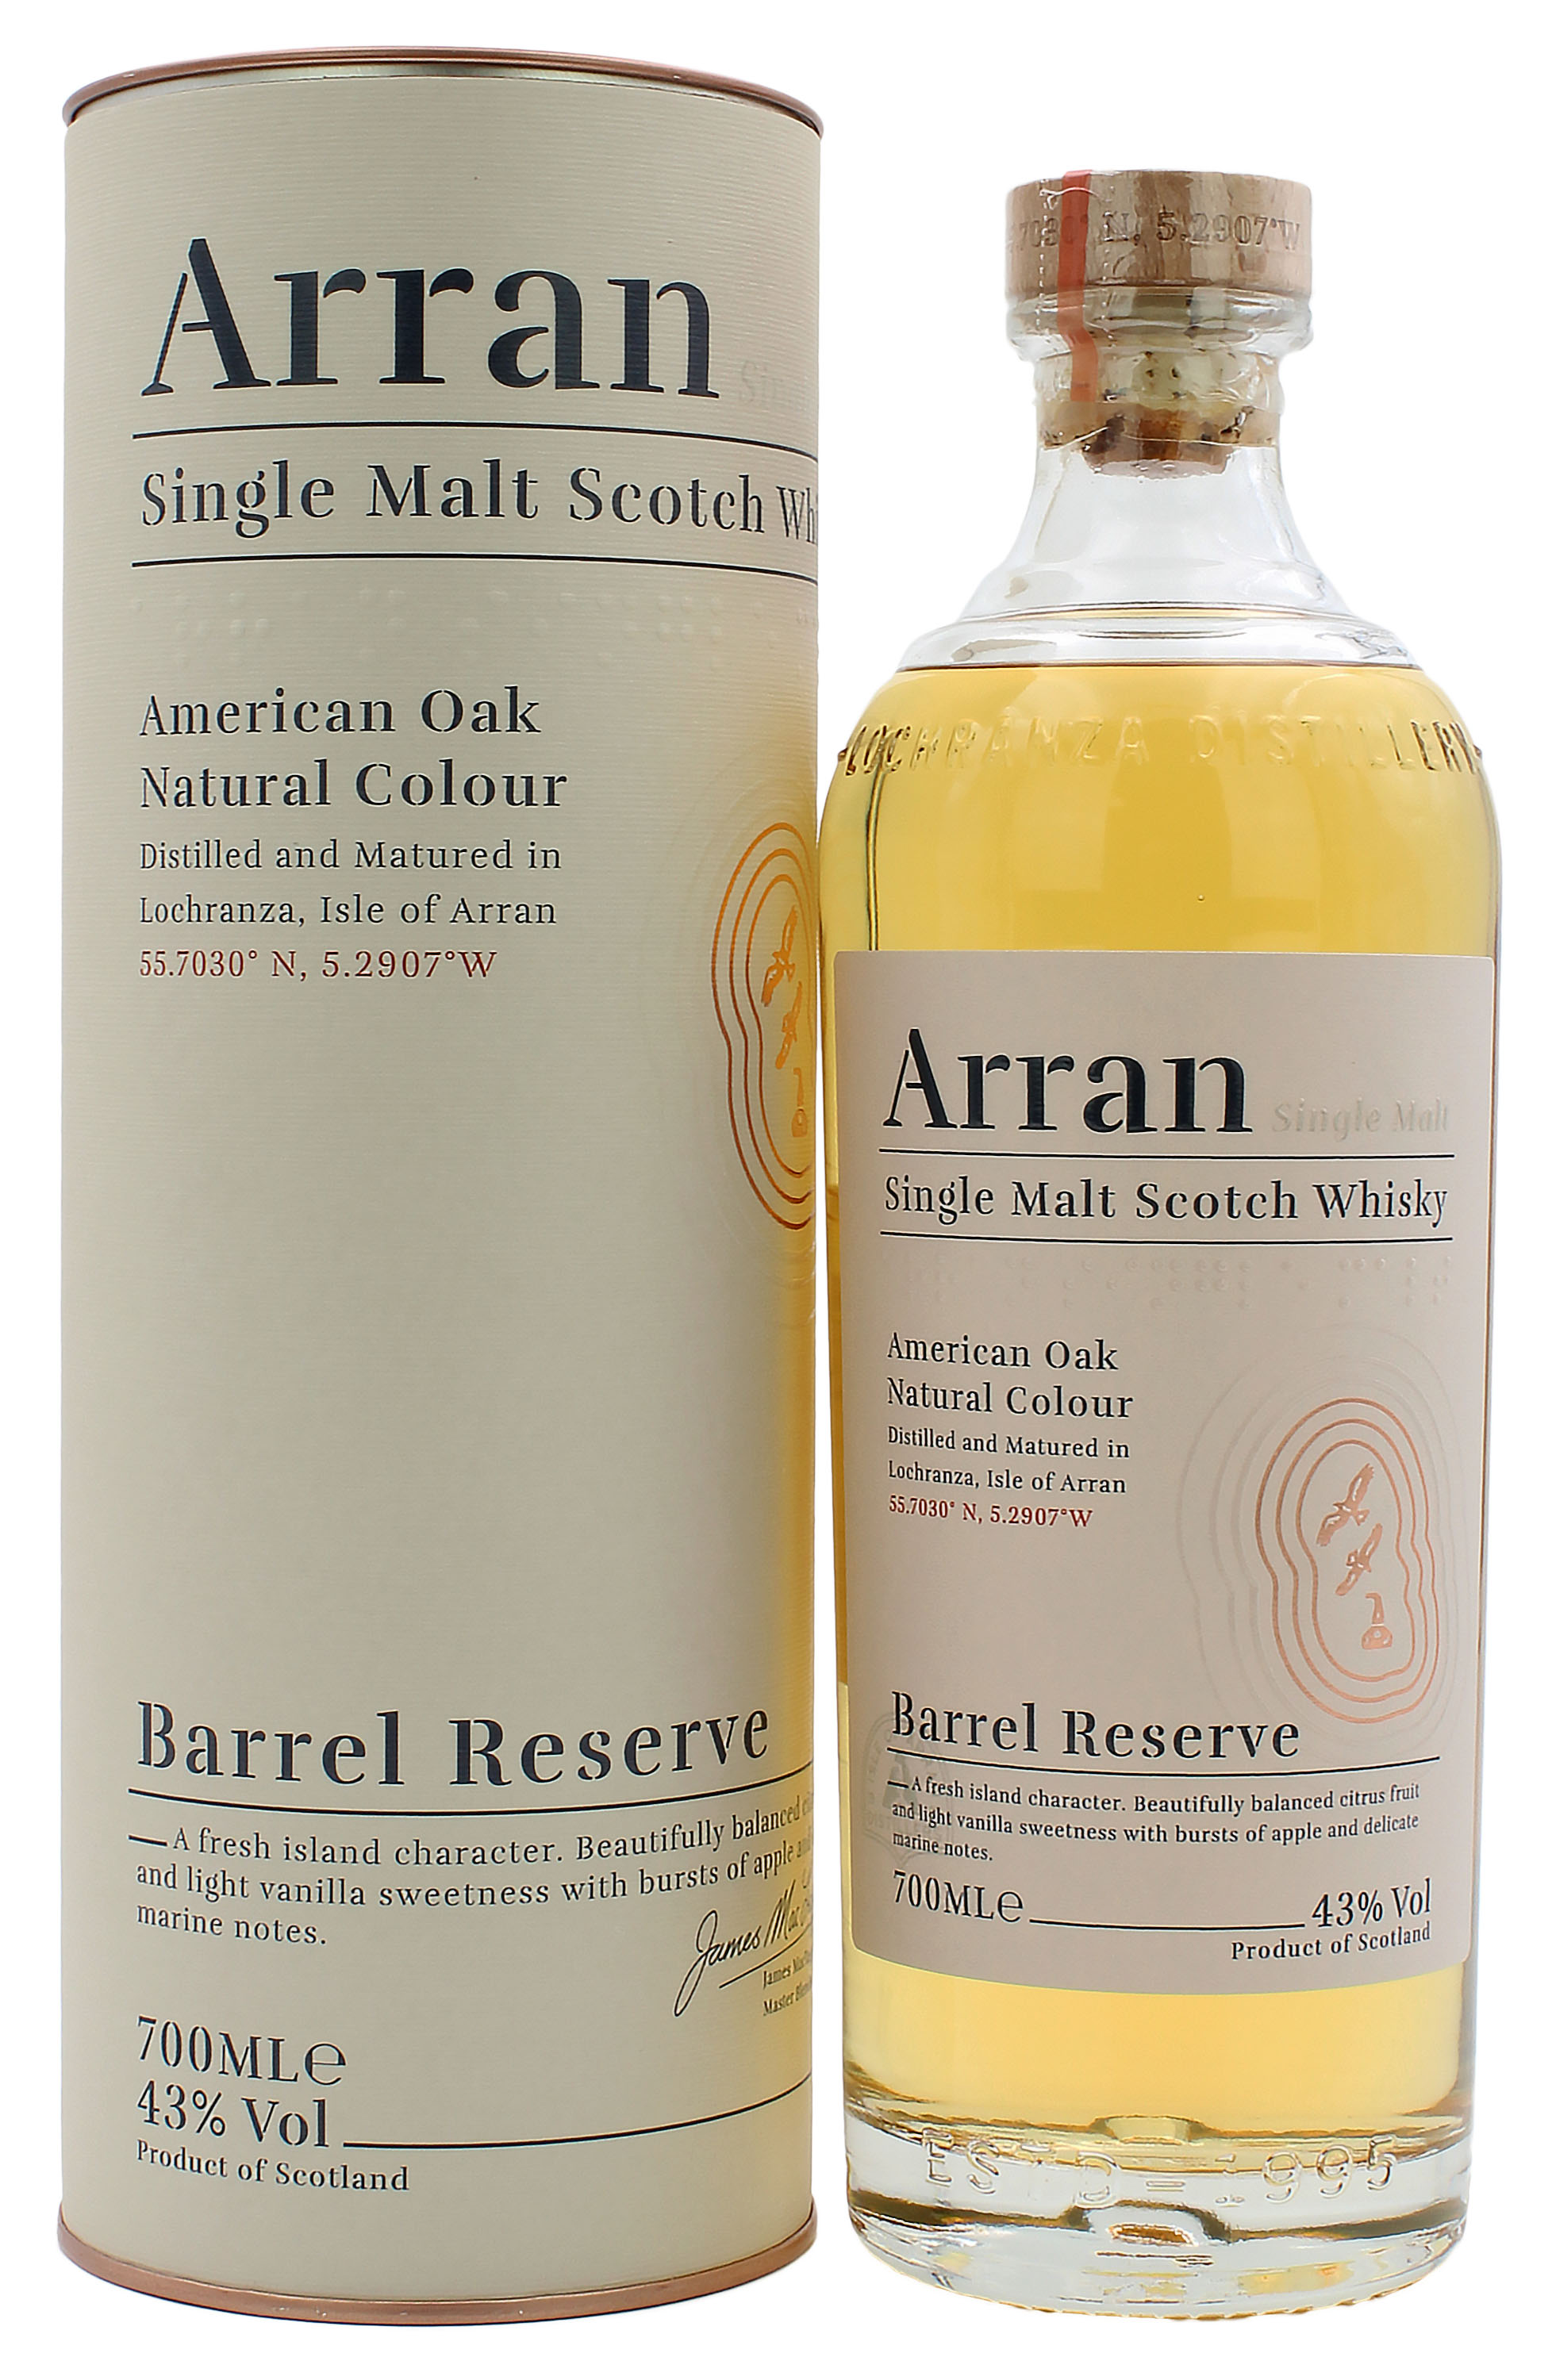 Whisky Arran american oak Barrel Reserve